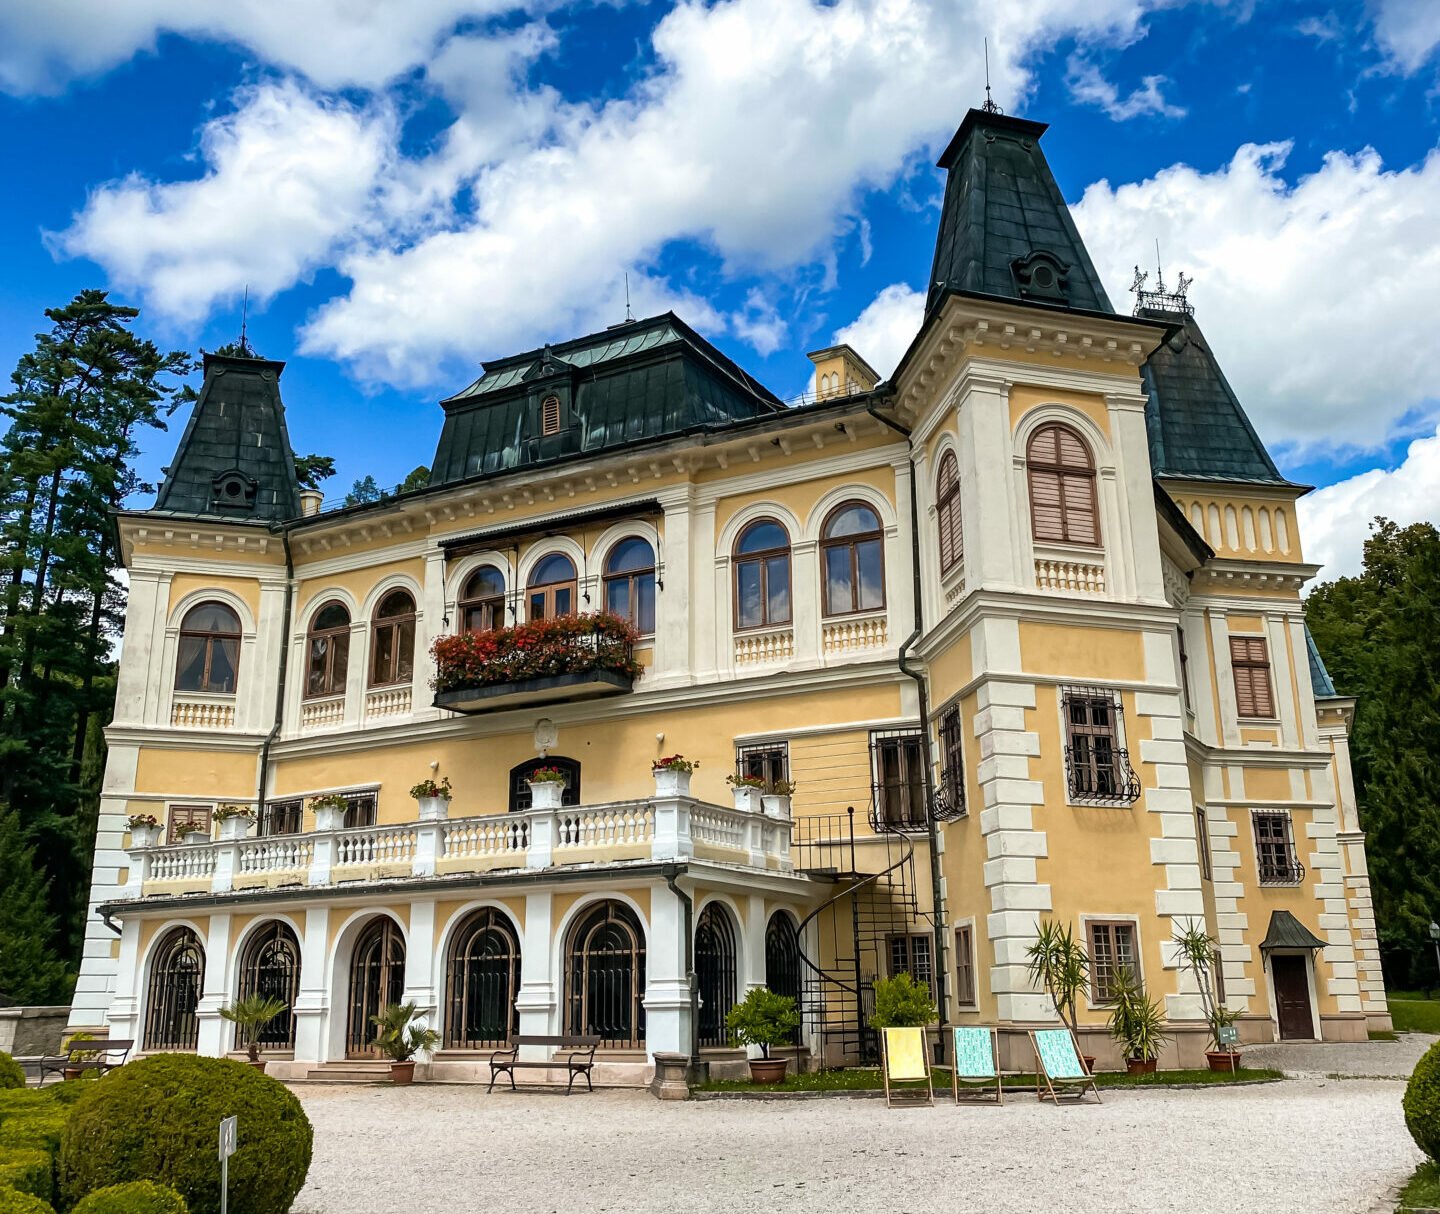 Odpovede: Spoznáte všetky zaujímavé miesta na východnom Slovensku?